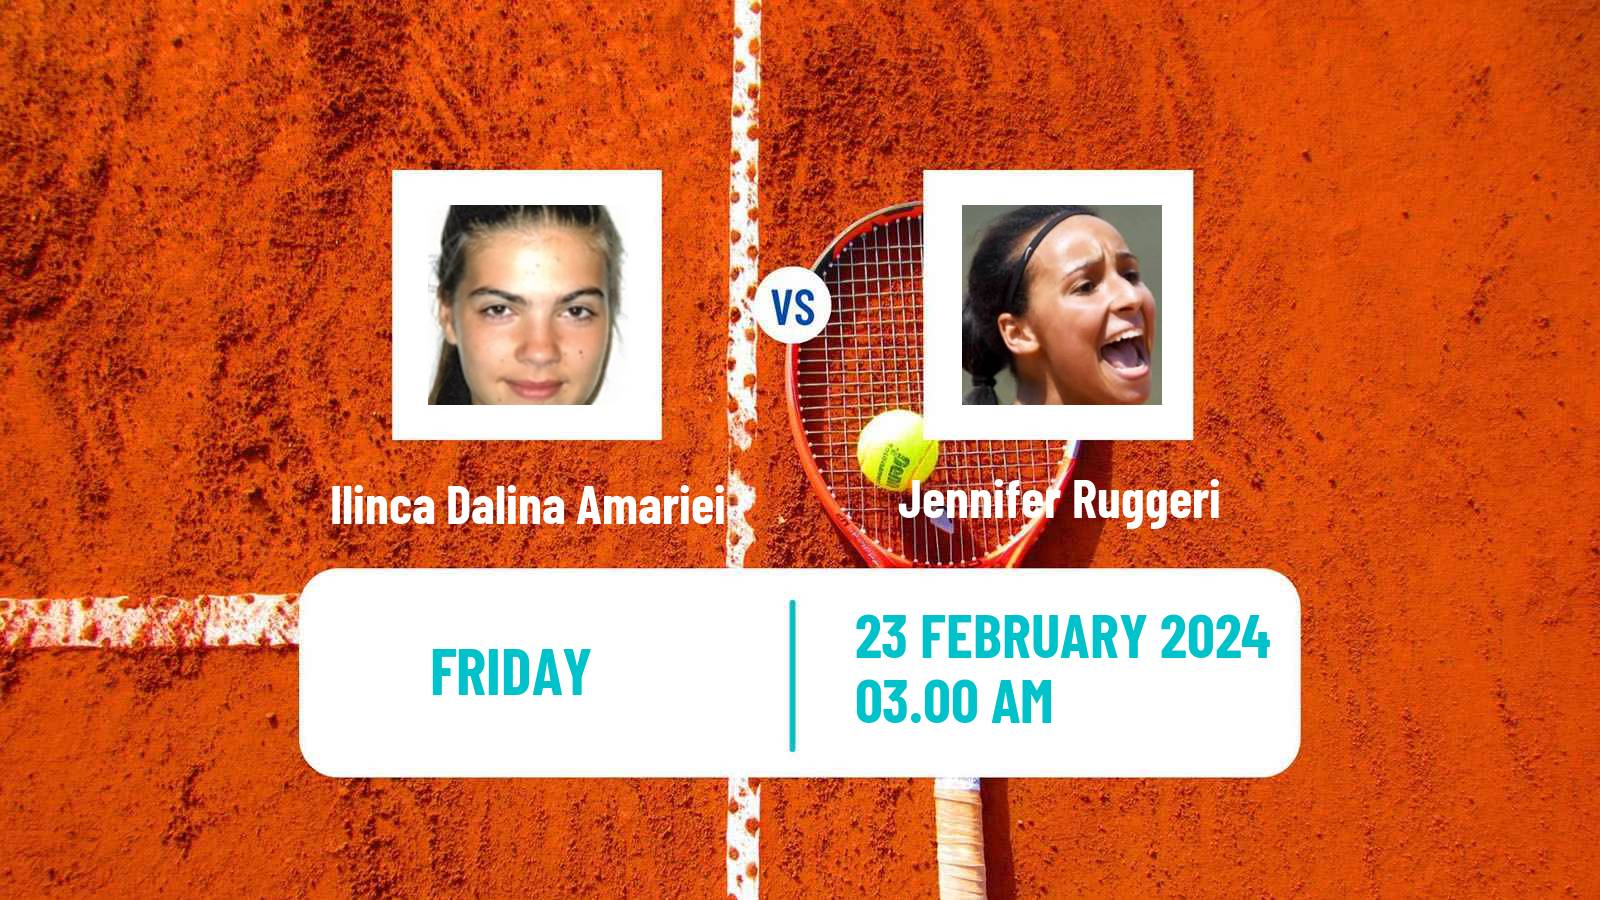 Tennis ITF W35 Hammamet 2 Women Ilinca Dalina Amariei - Jennifer Ruggeri